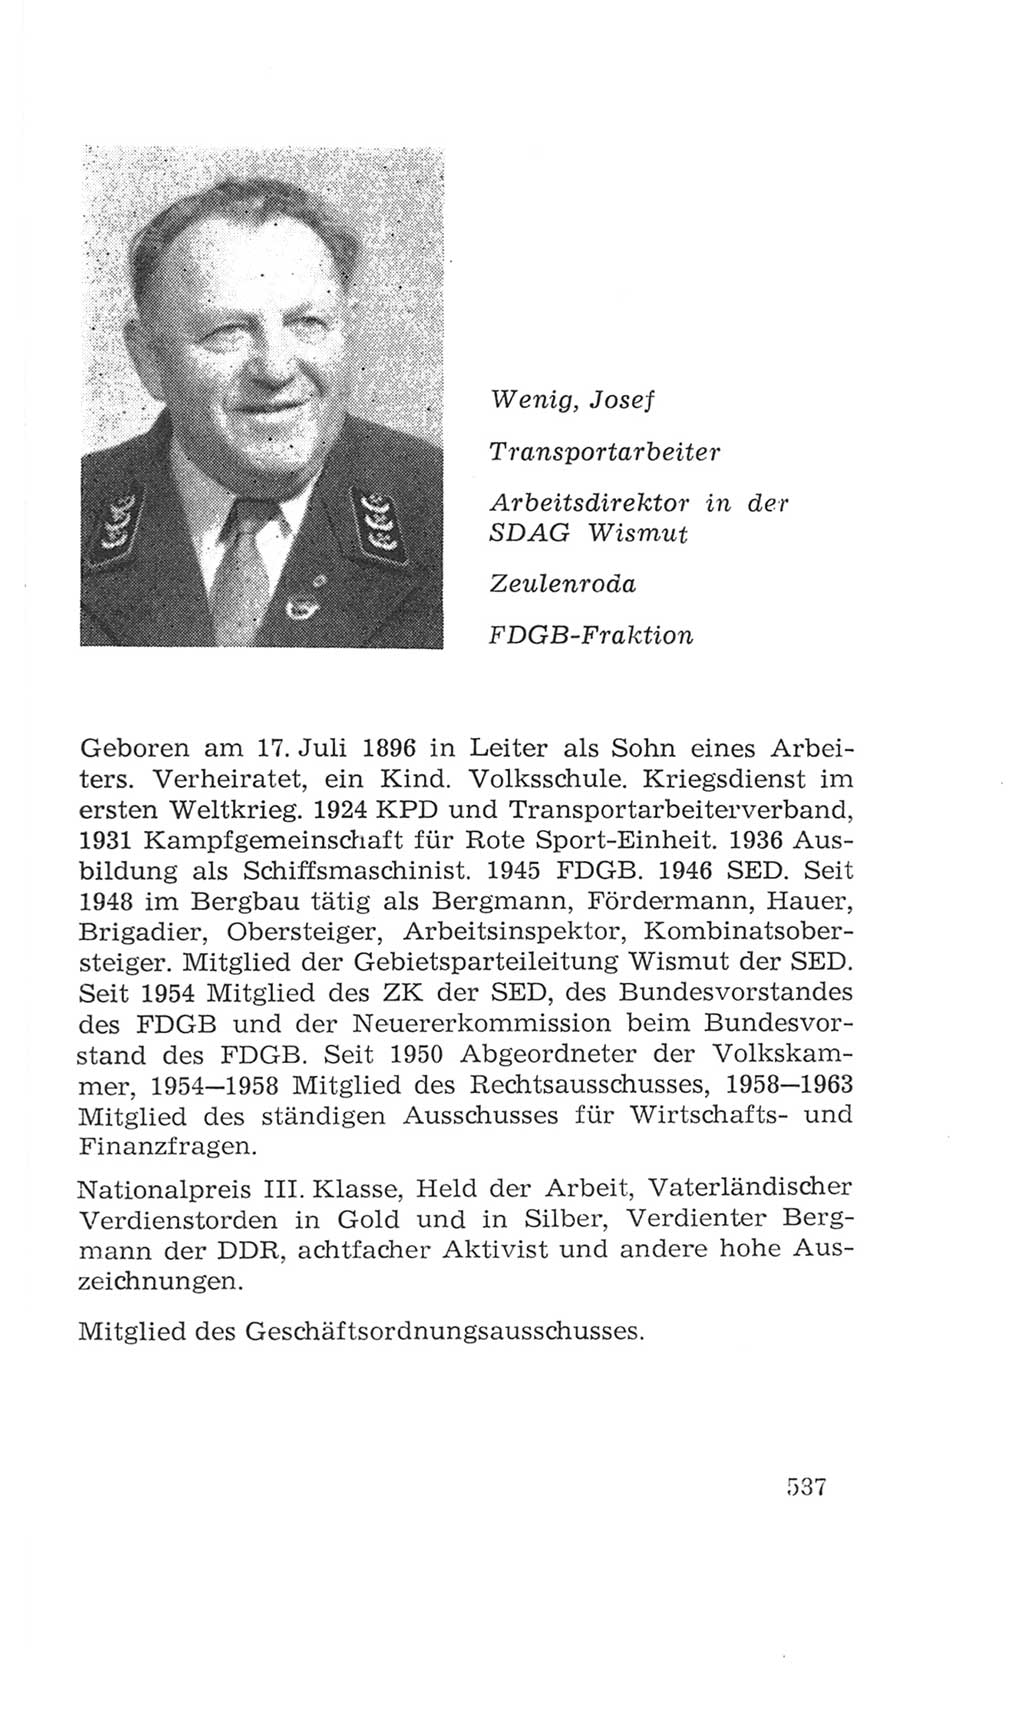 Volkskammer (VK) der Deutschen Demokratischen Republik (DDR), 4. Wahlperiode 1963-1967, Seite 587 (VK. DDR 4. WP. 1963-1967, S. 587)